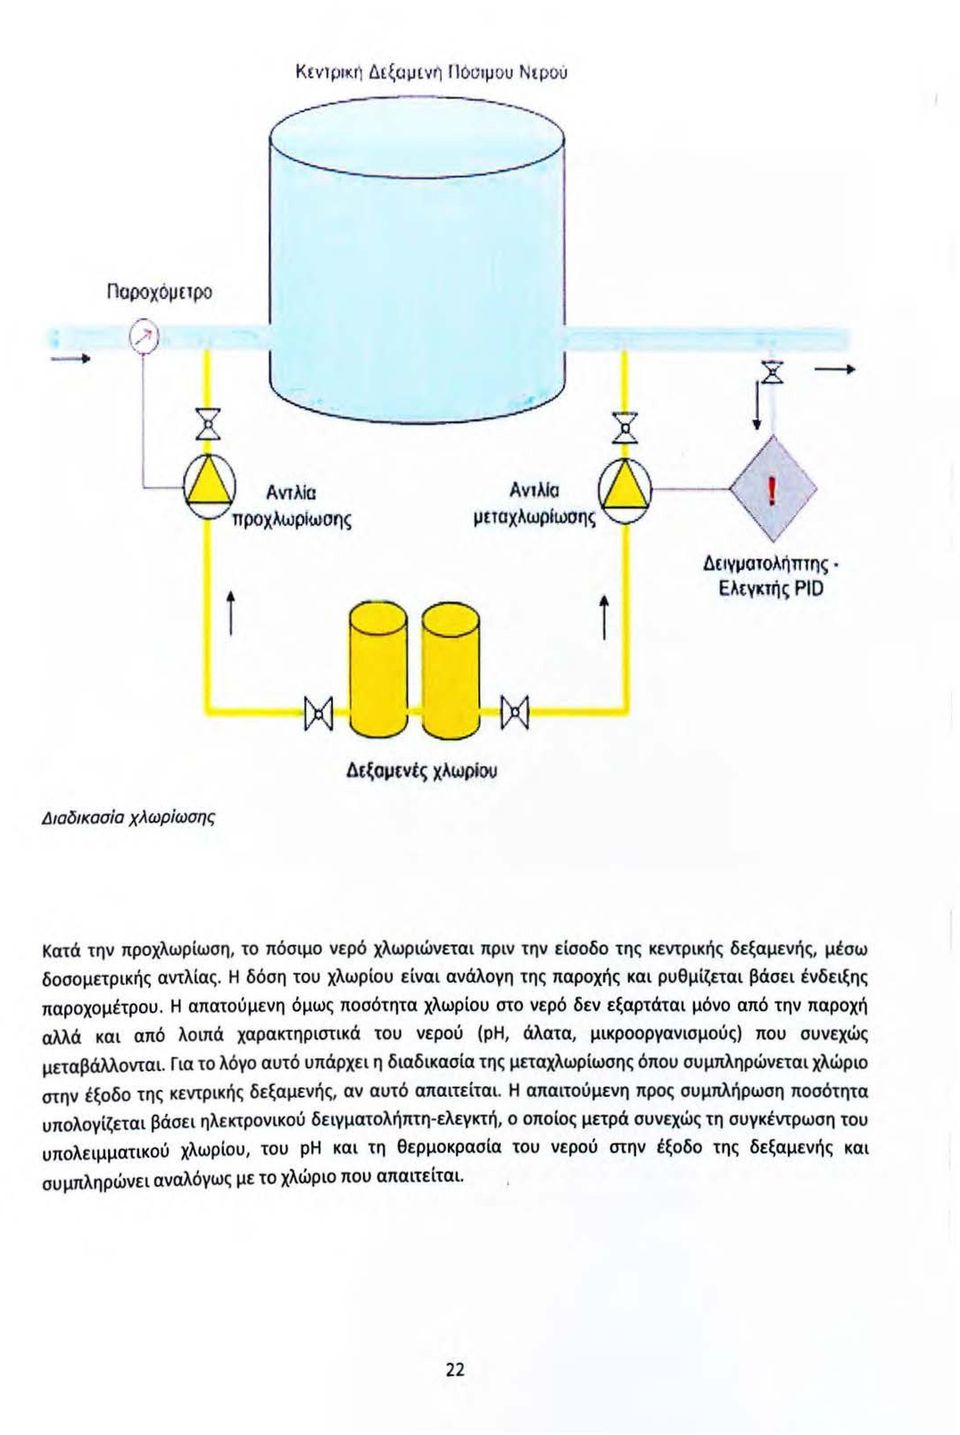 / "\ι Δειγματολήπτης Ελεγκτής ΡΙD Δεξομενtς χλωρίου Διαδικασία χλωρίωσης Κατά την προχλωρίωση, το πόσιμο νερό χλωριώνεται πριν την είσοδο της κεντρικής δεξαμενής, μέσω δοσομετρικής αντλίας.